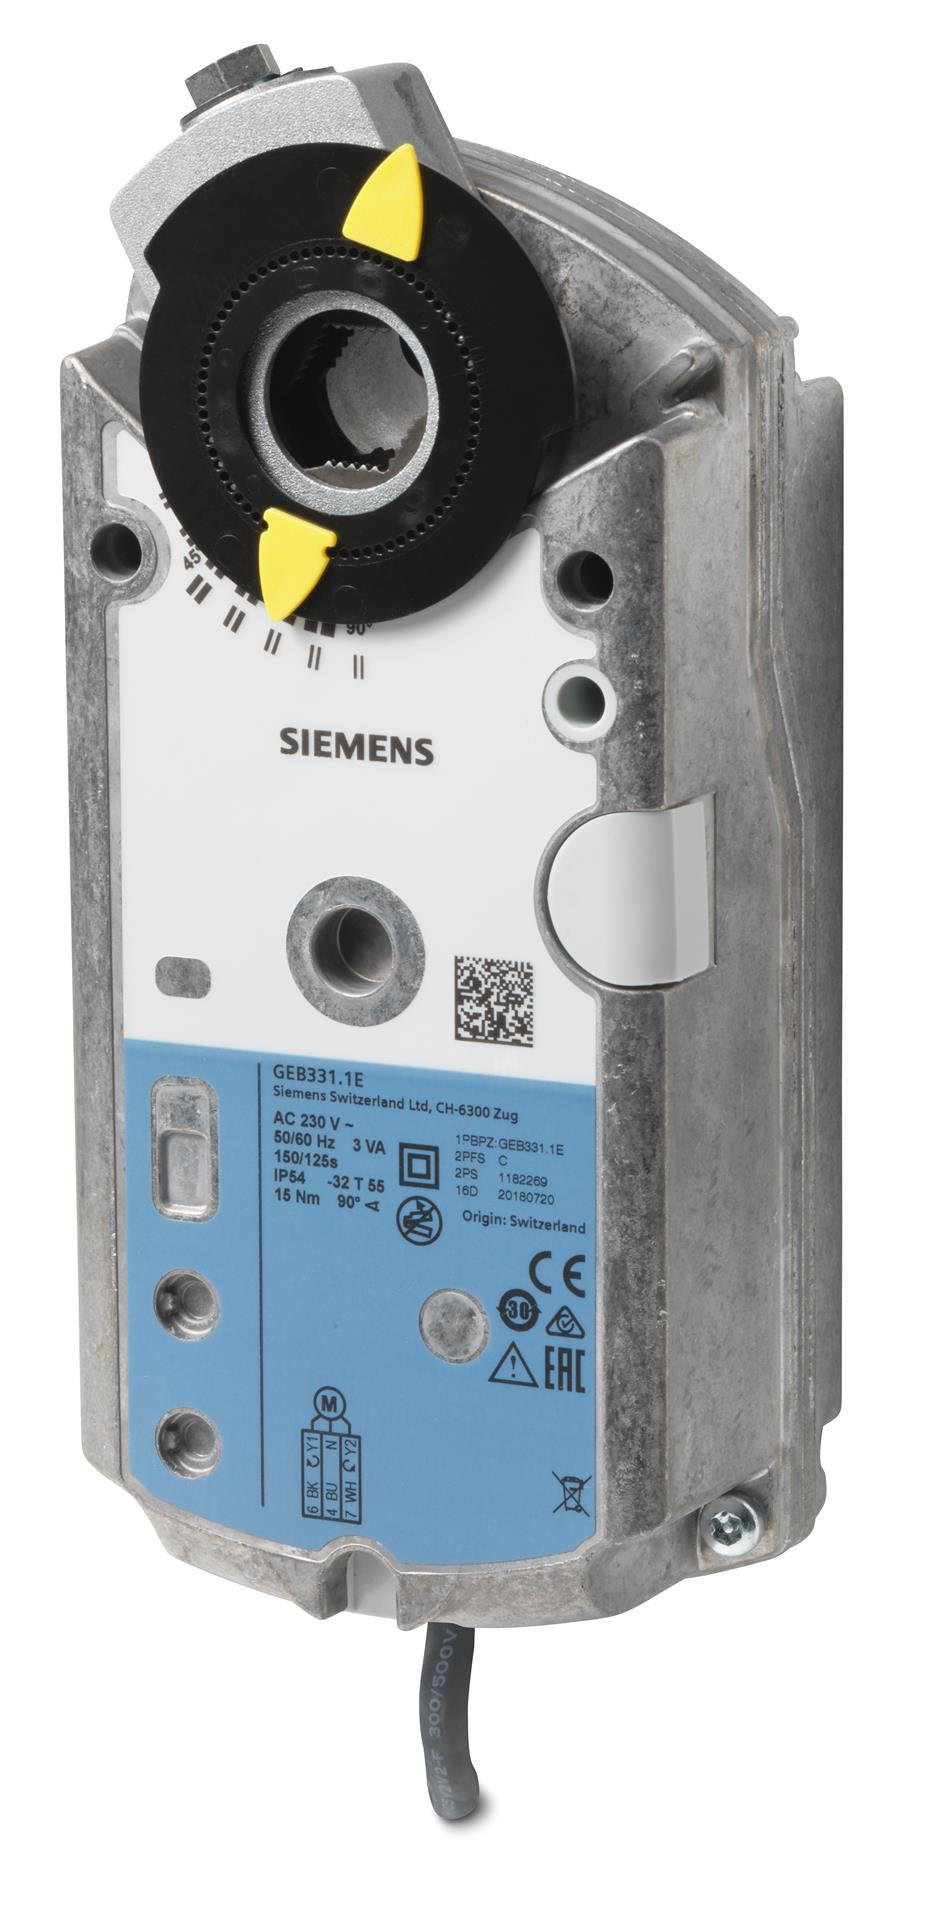 Siemens Luftklappen-Drehantrieb, AC 230 V, 3-Punkt, 15 Nm, 150 s GEB331.1E gibt es nicht mehr Altenative ist GEB341.1E